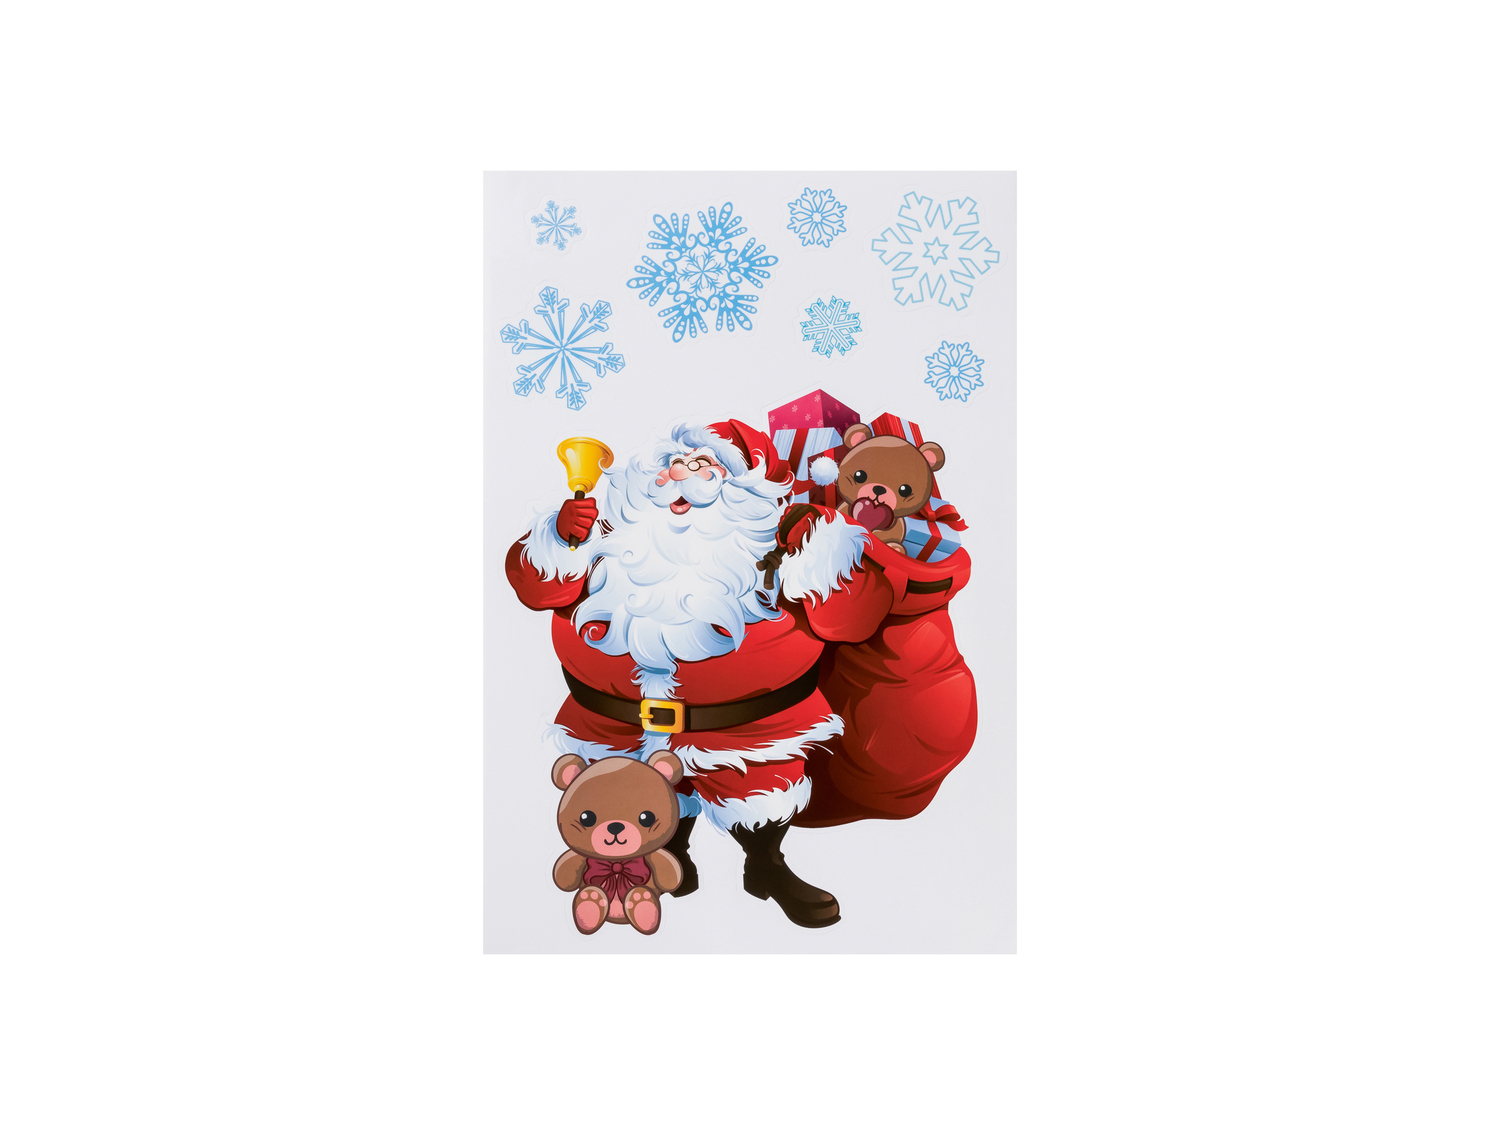 Decorazioni natalizie adesive Melinera, prezzo 0.99 &#8364;  

Caratteristiche